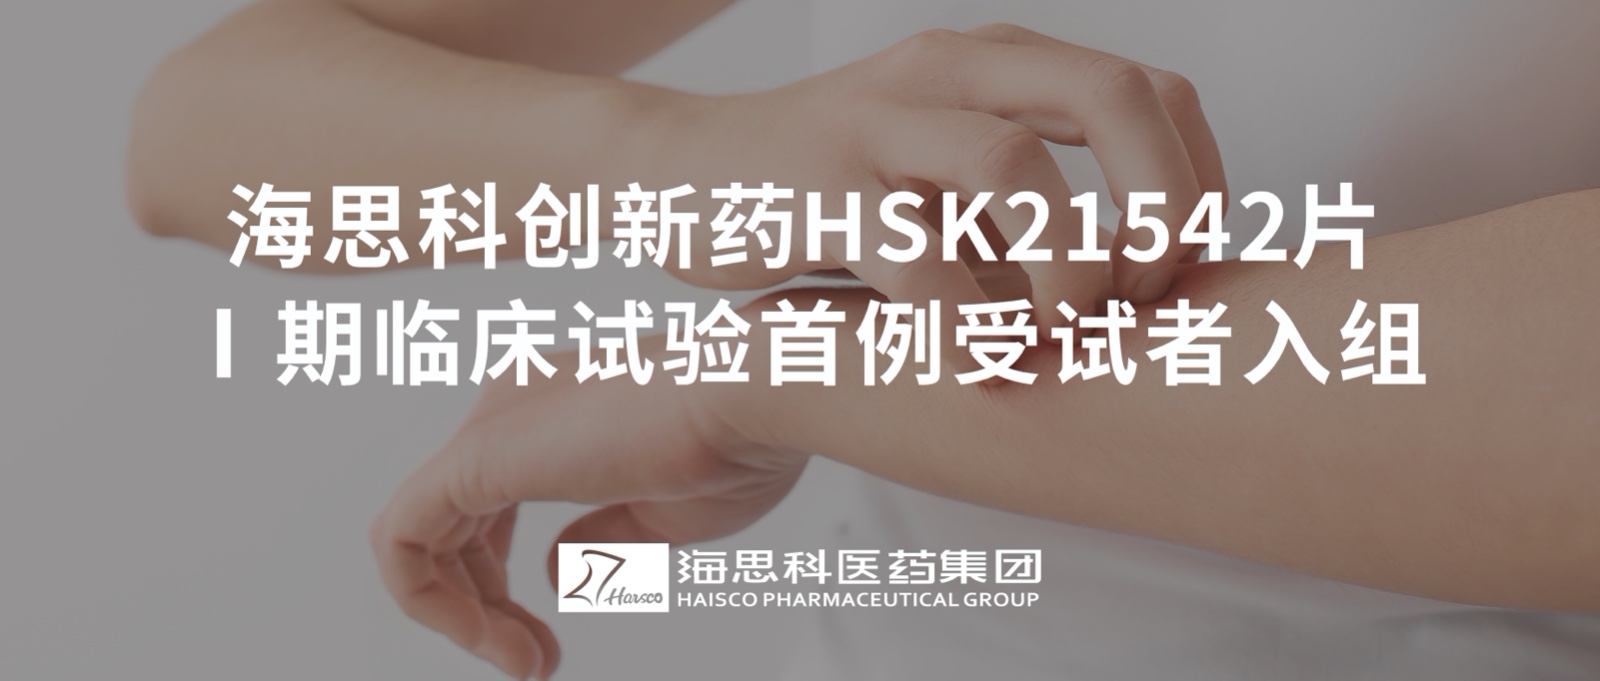 老金沙9170登录创新药HSK21542片Ⅰ期临床试验首例受试者入组